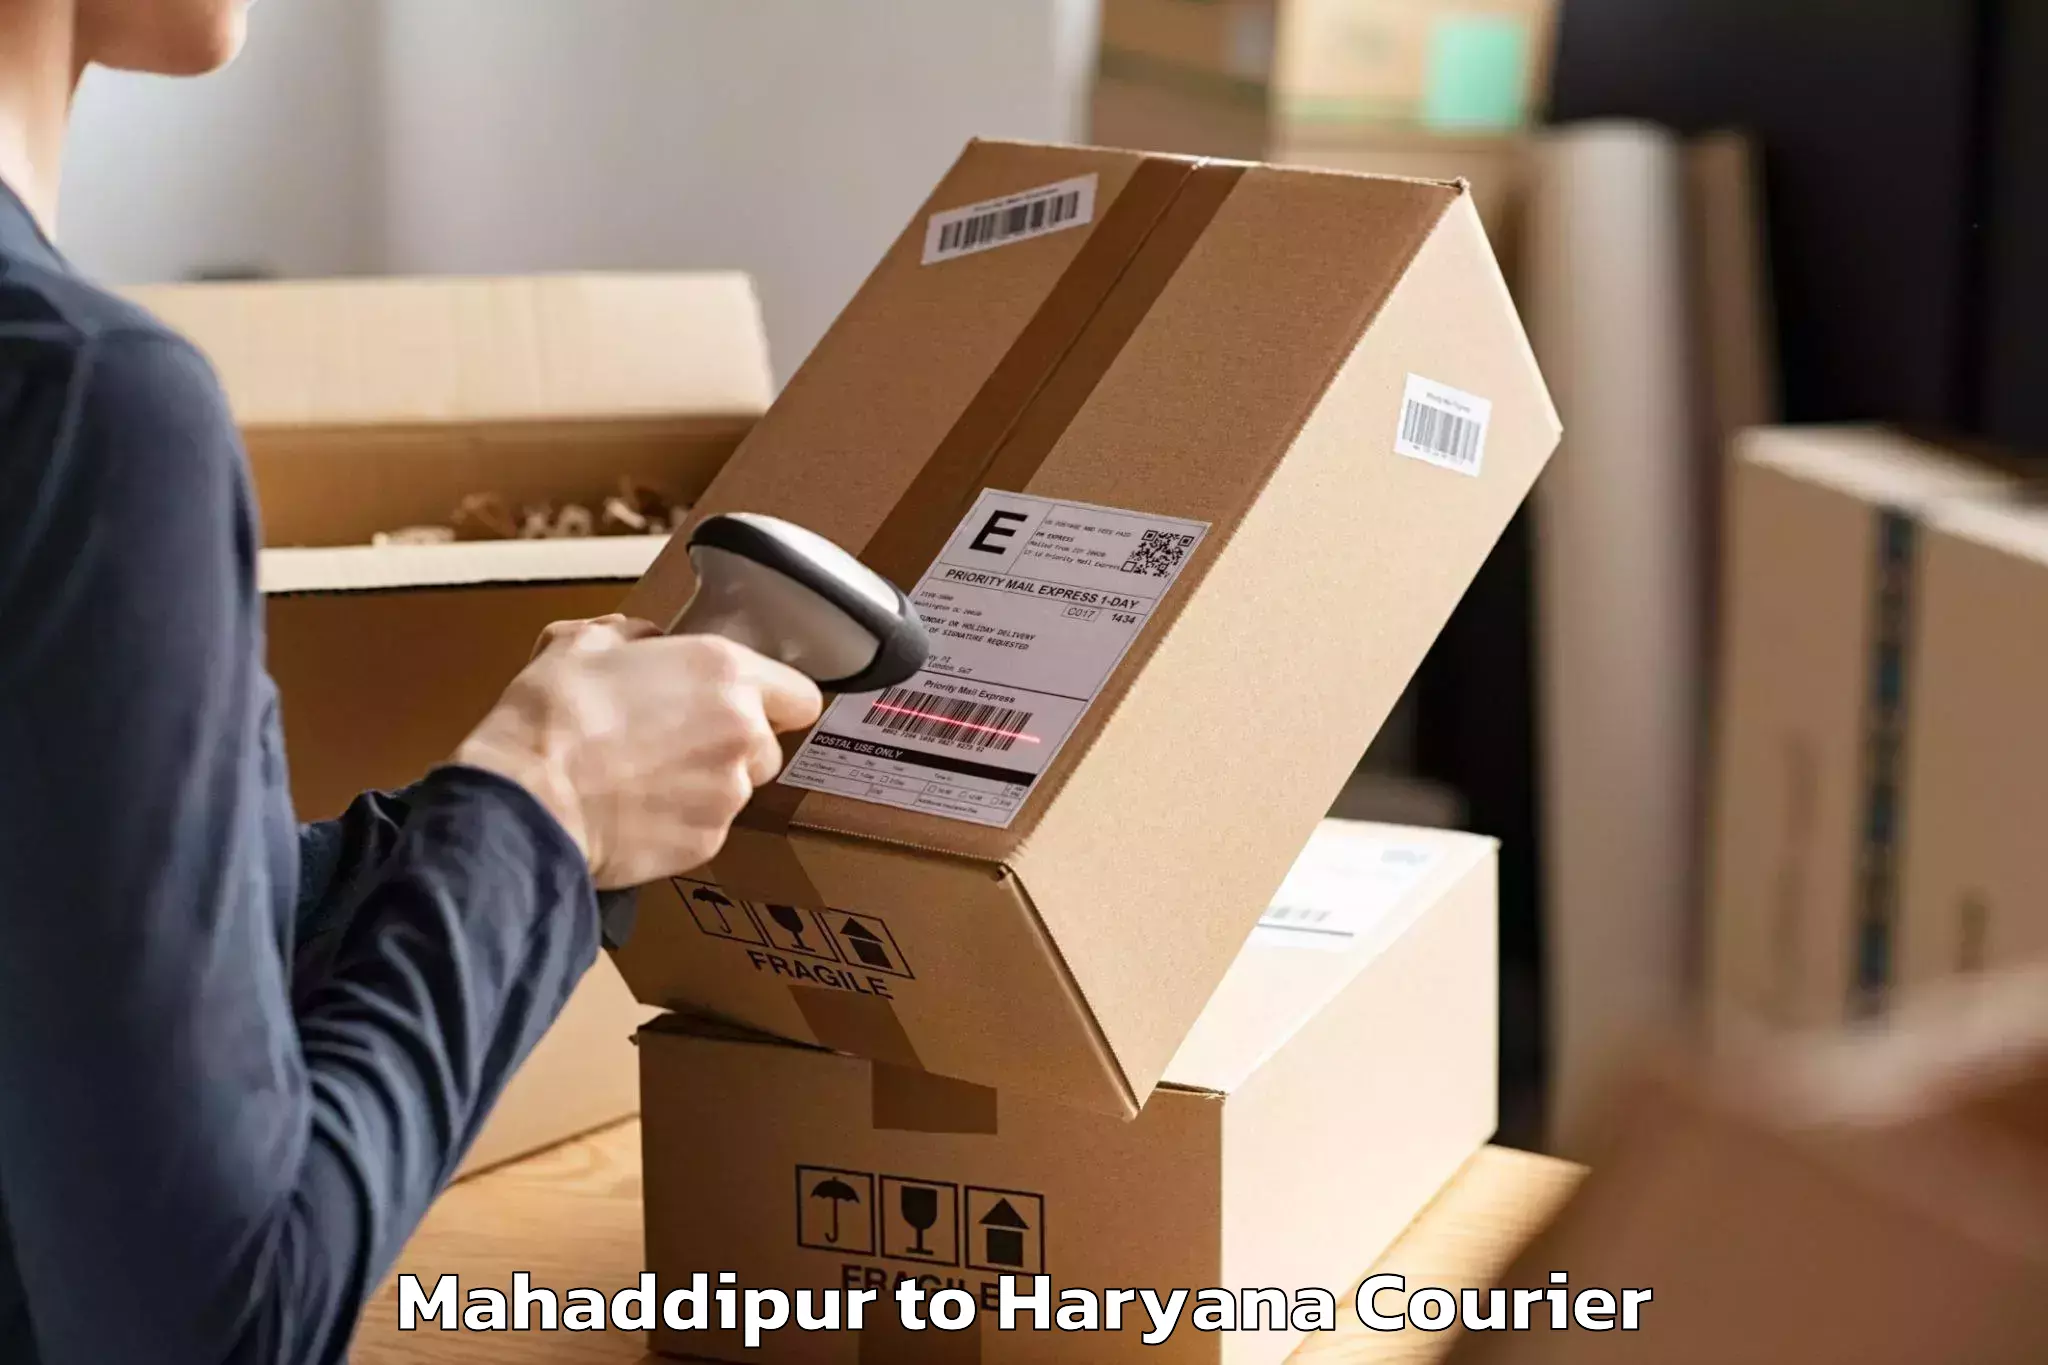 Moving and packing experts Mahaddipur to Julana